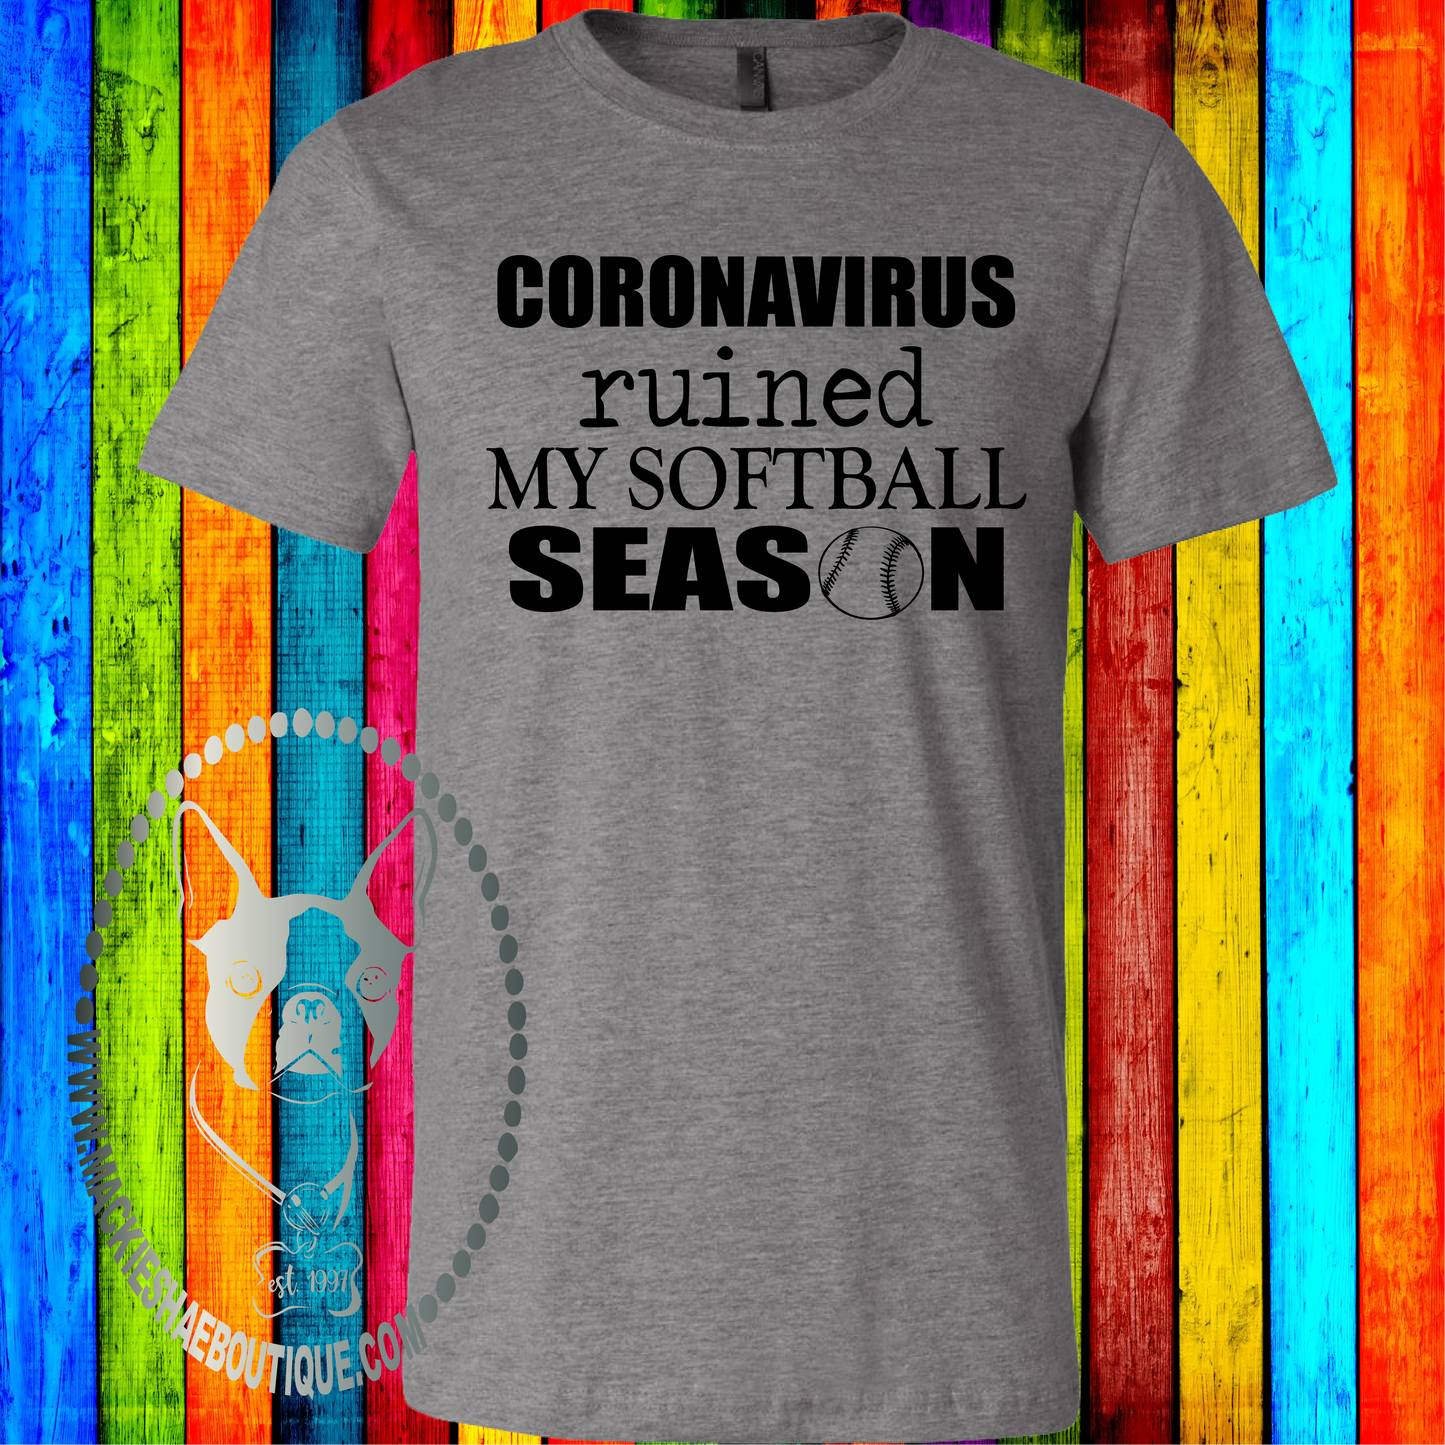 Coronavirus Ruined My Softball Season Custom Shirt, Soft Short Sleeve